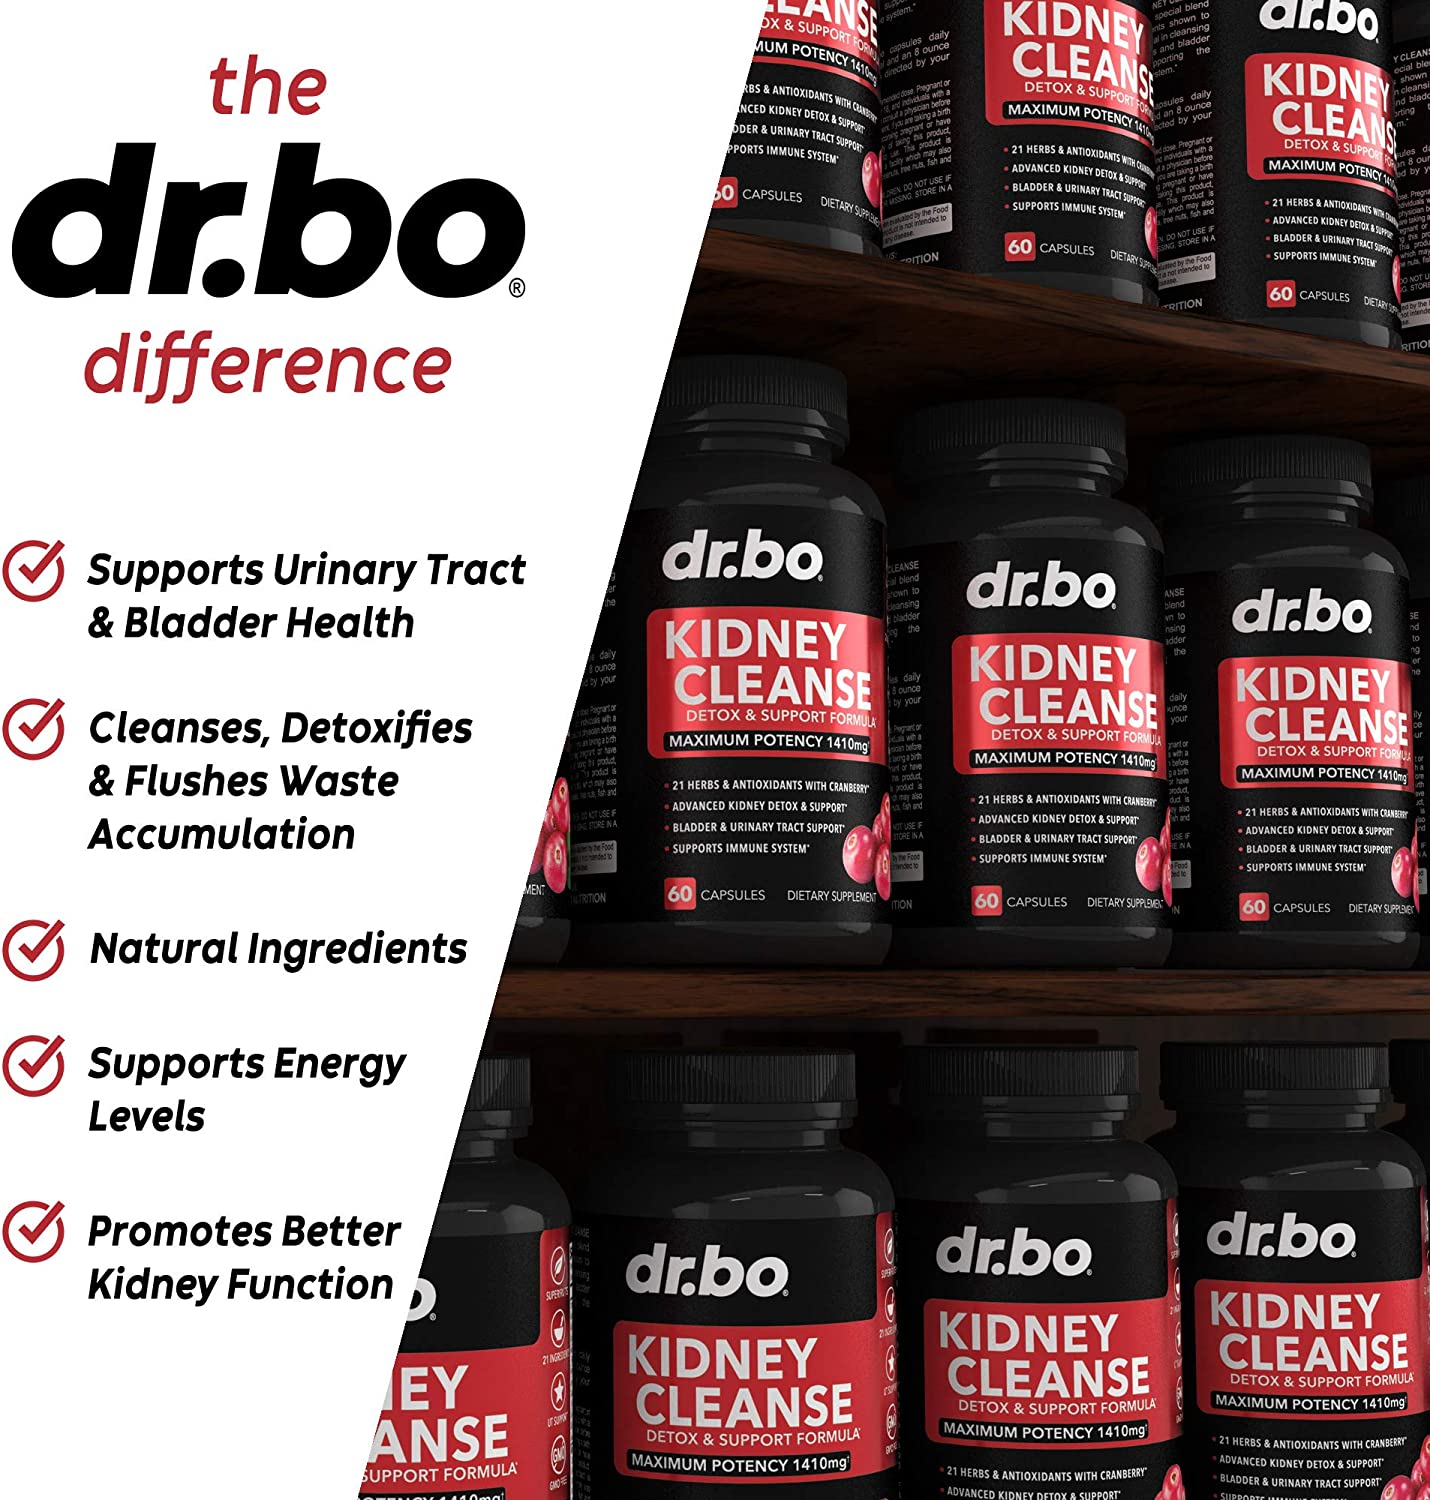 อาหารเสริมบำรุงไต Kidney Cleanse Detox Support Supplement by DR. BO - 60 caps